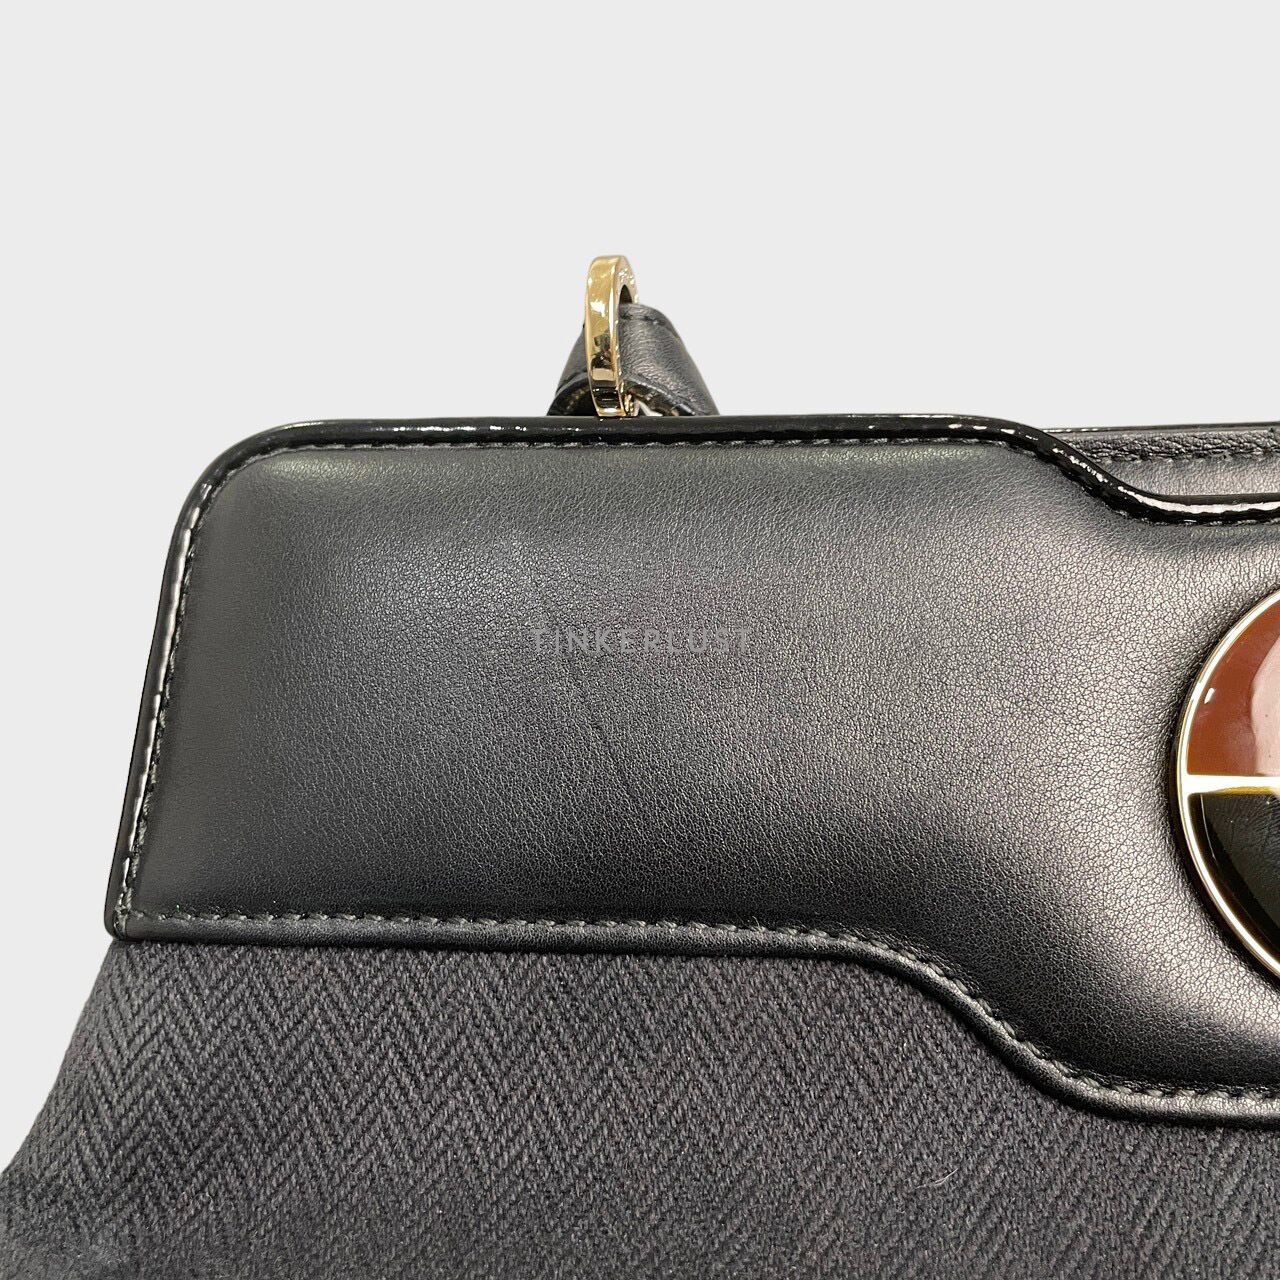 Bvlgari Leather Isabella Rossellini Black Handbag